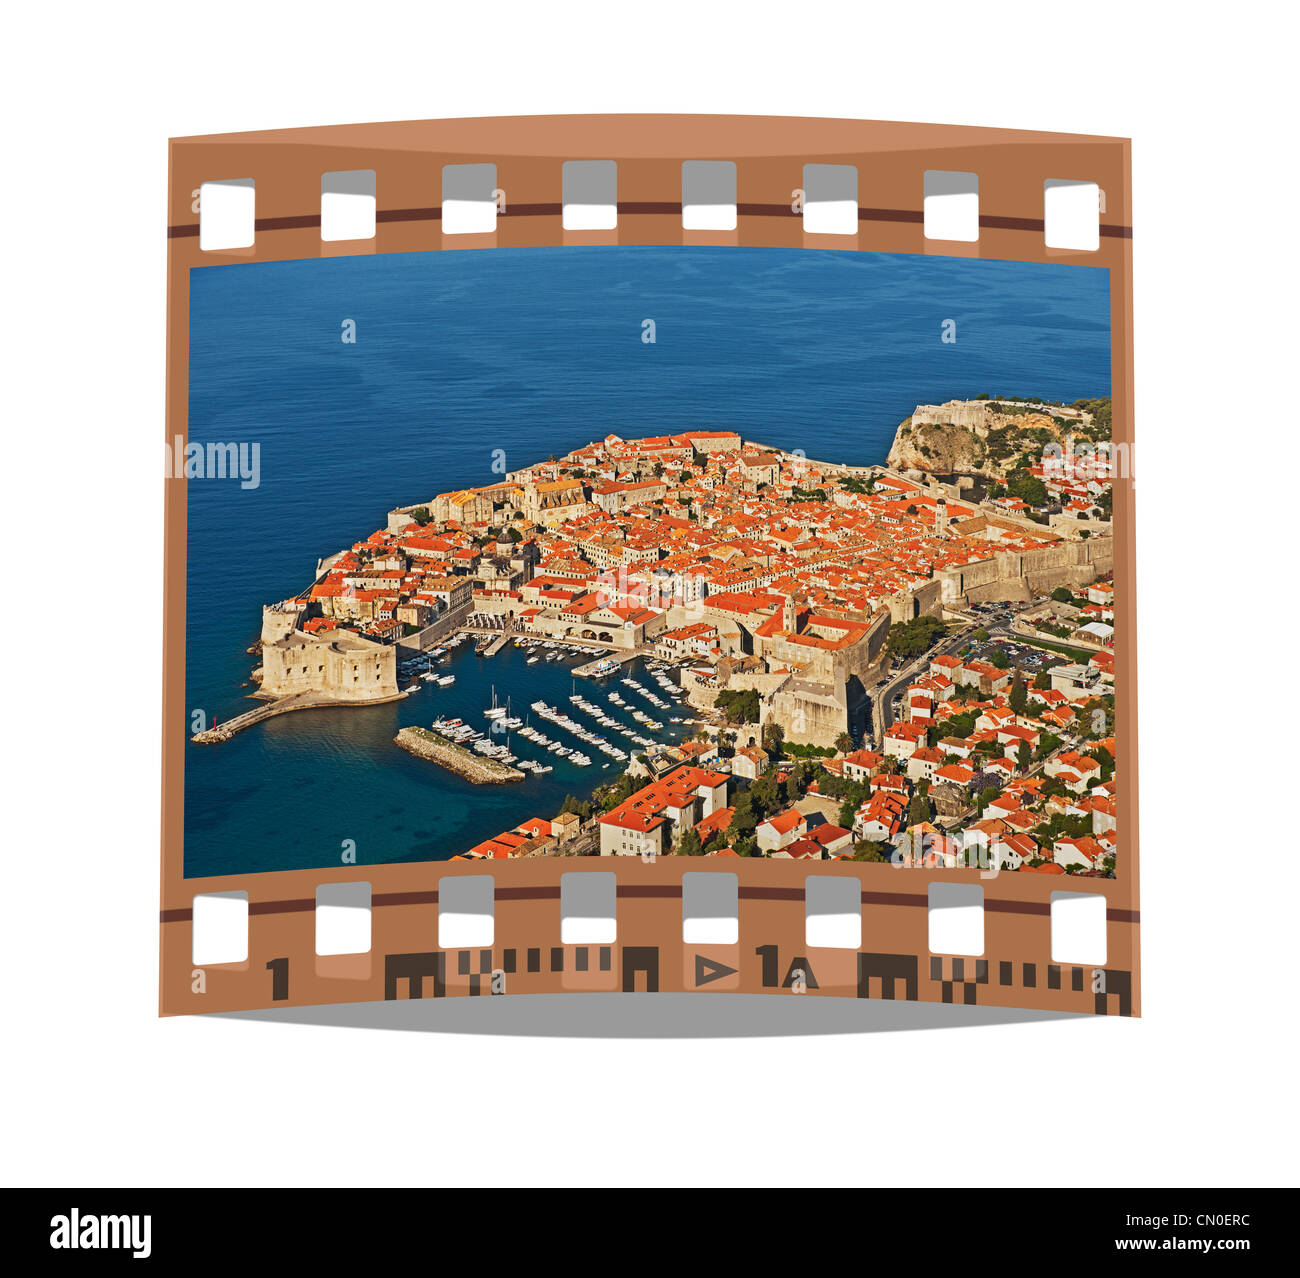 Film fixe : vue sur la vieille ville de Dubrovnik, Fort Revelin , le port de la ville et forteresse de Saint-Jean. Dubrovnik, Croatie Europe Banque D'Images